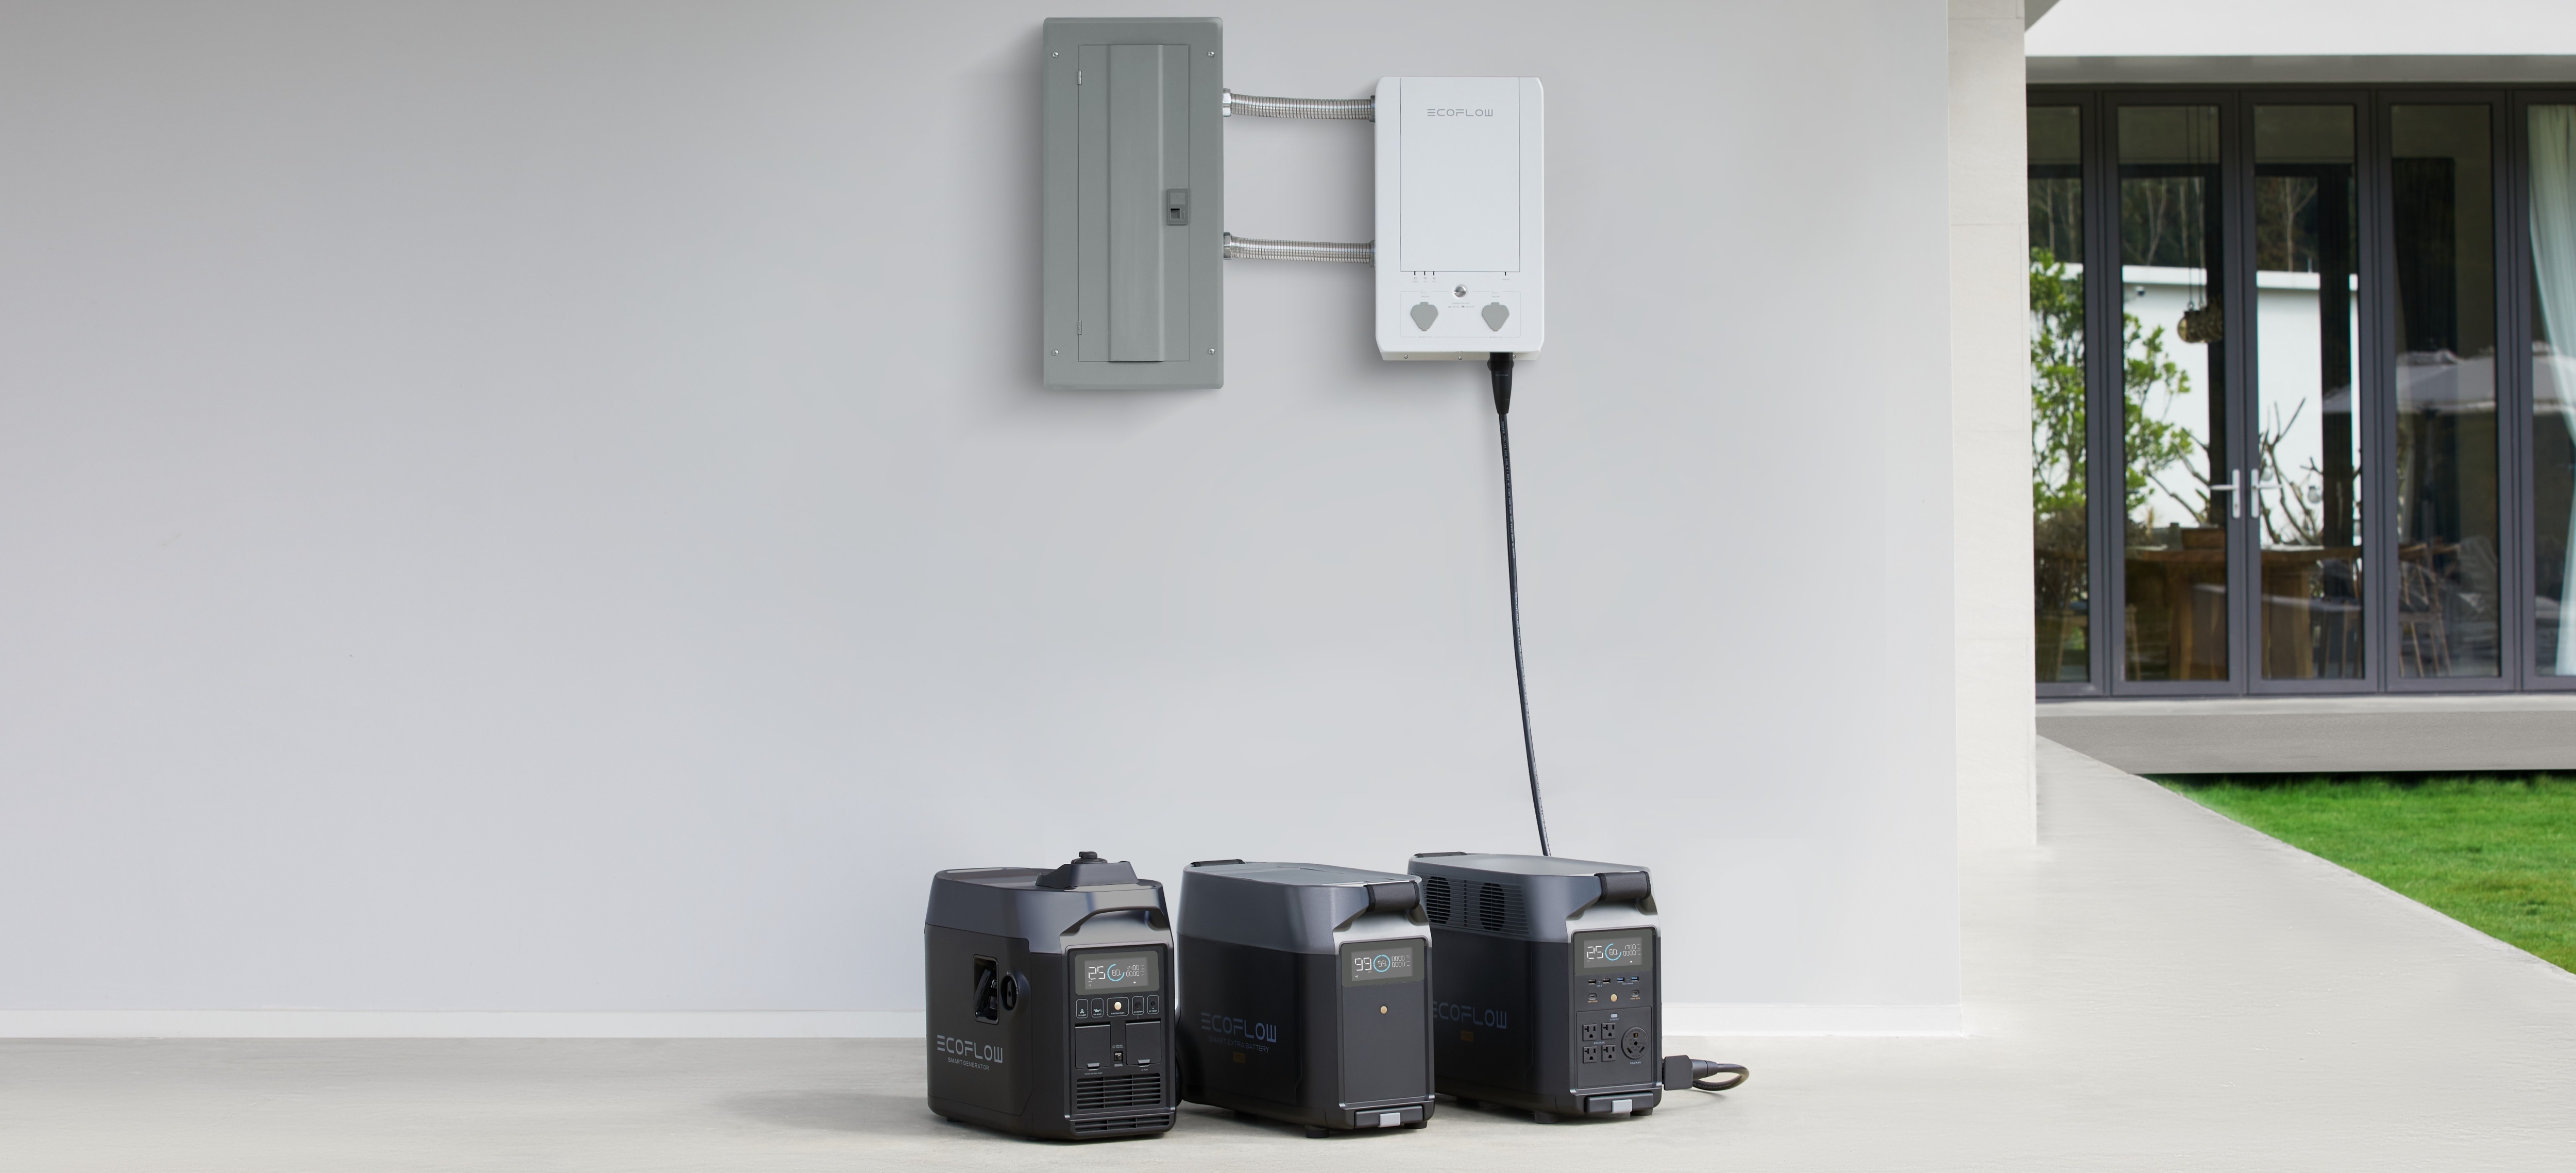 Панель EcoFlow Smart Home Panel Combo купить в минске (1).jpg